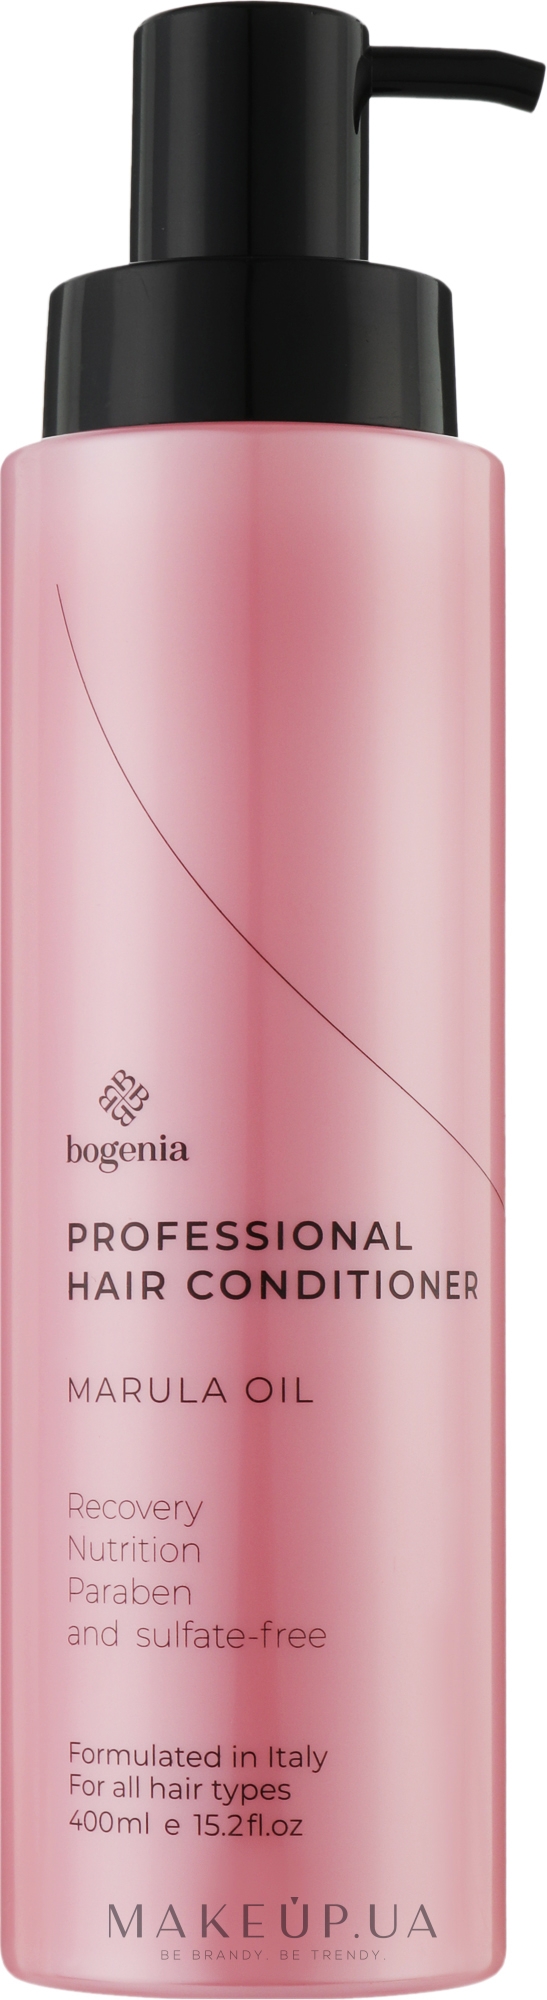 Профессиональный увлажняющий кондиционер для волос с маслом марулы - Bogenia Professional Hair Conditioner Marula Oil — фото 400ml